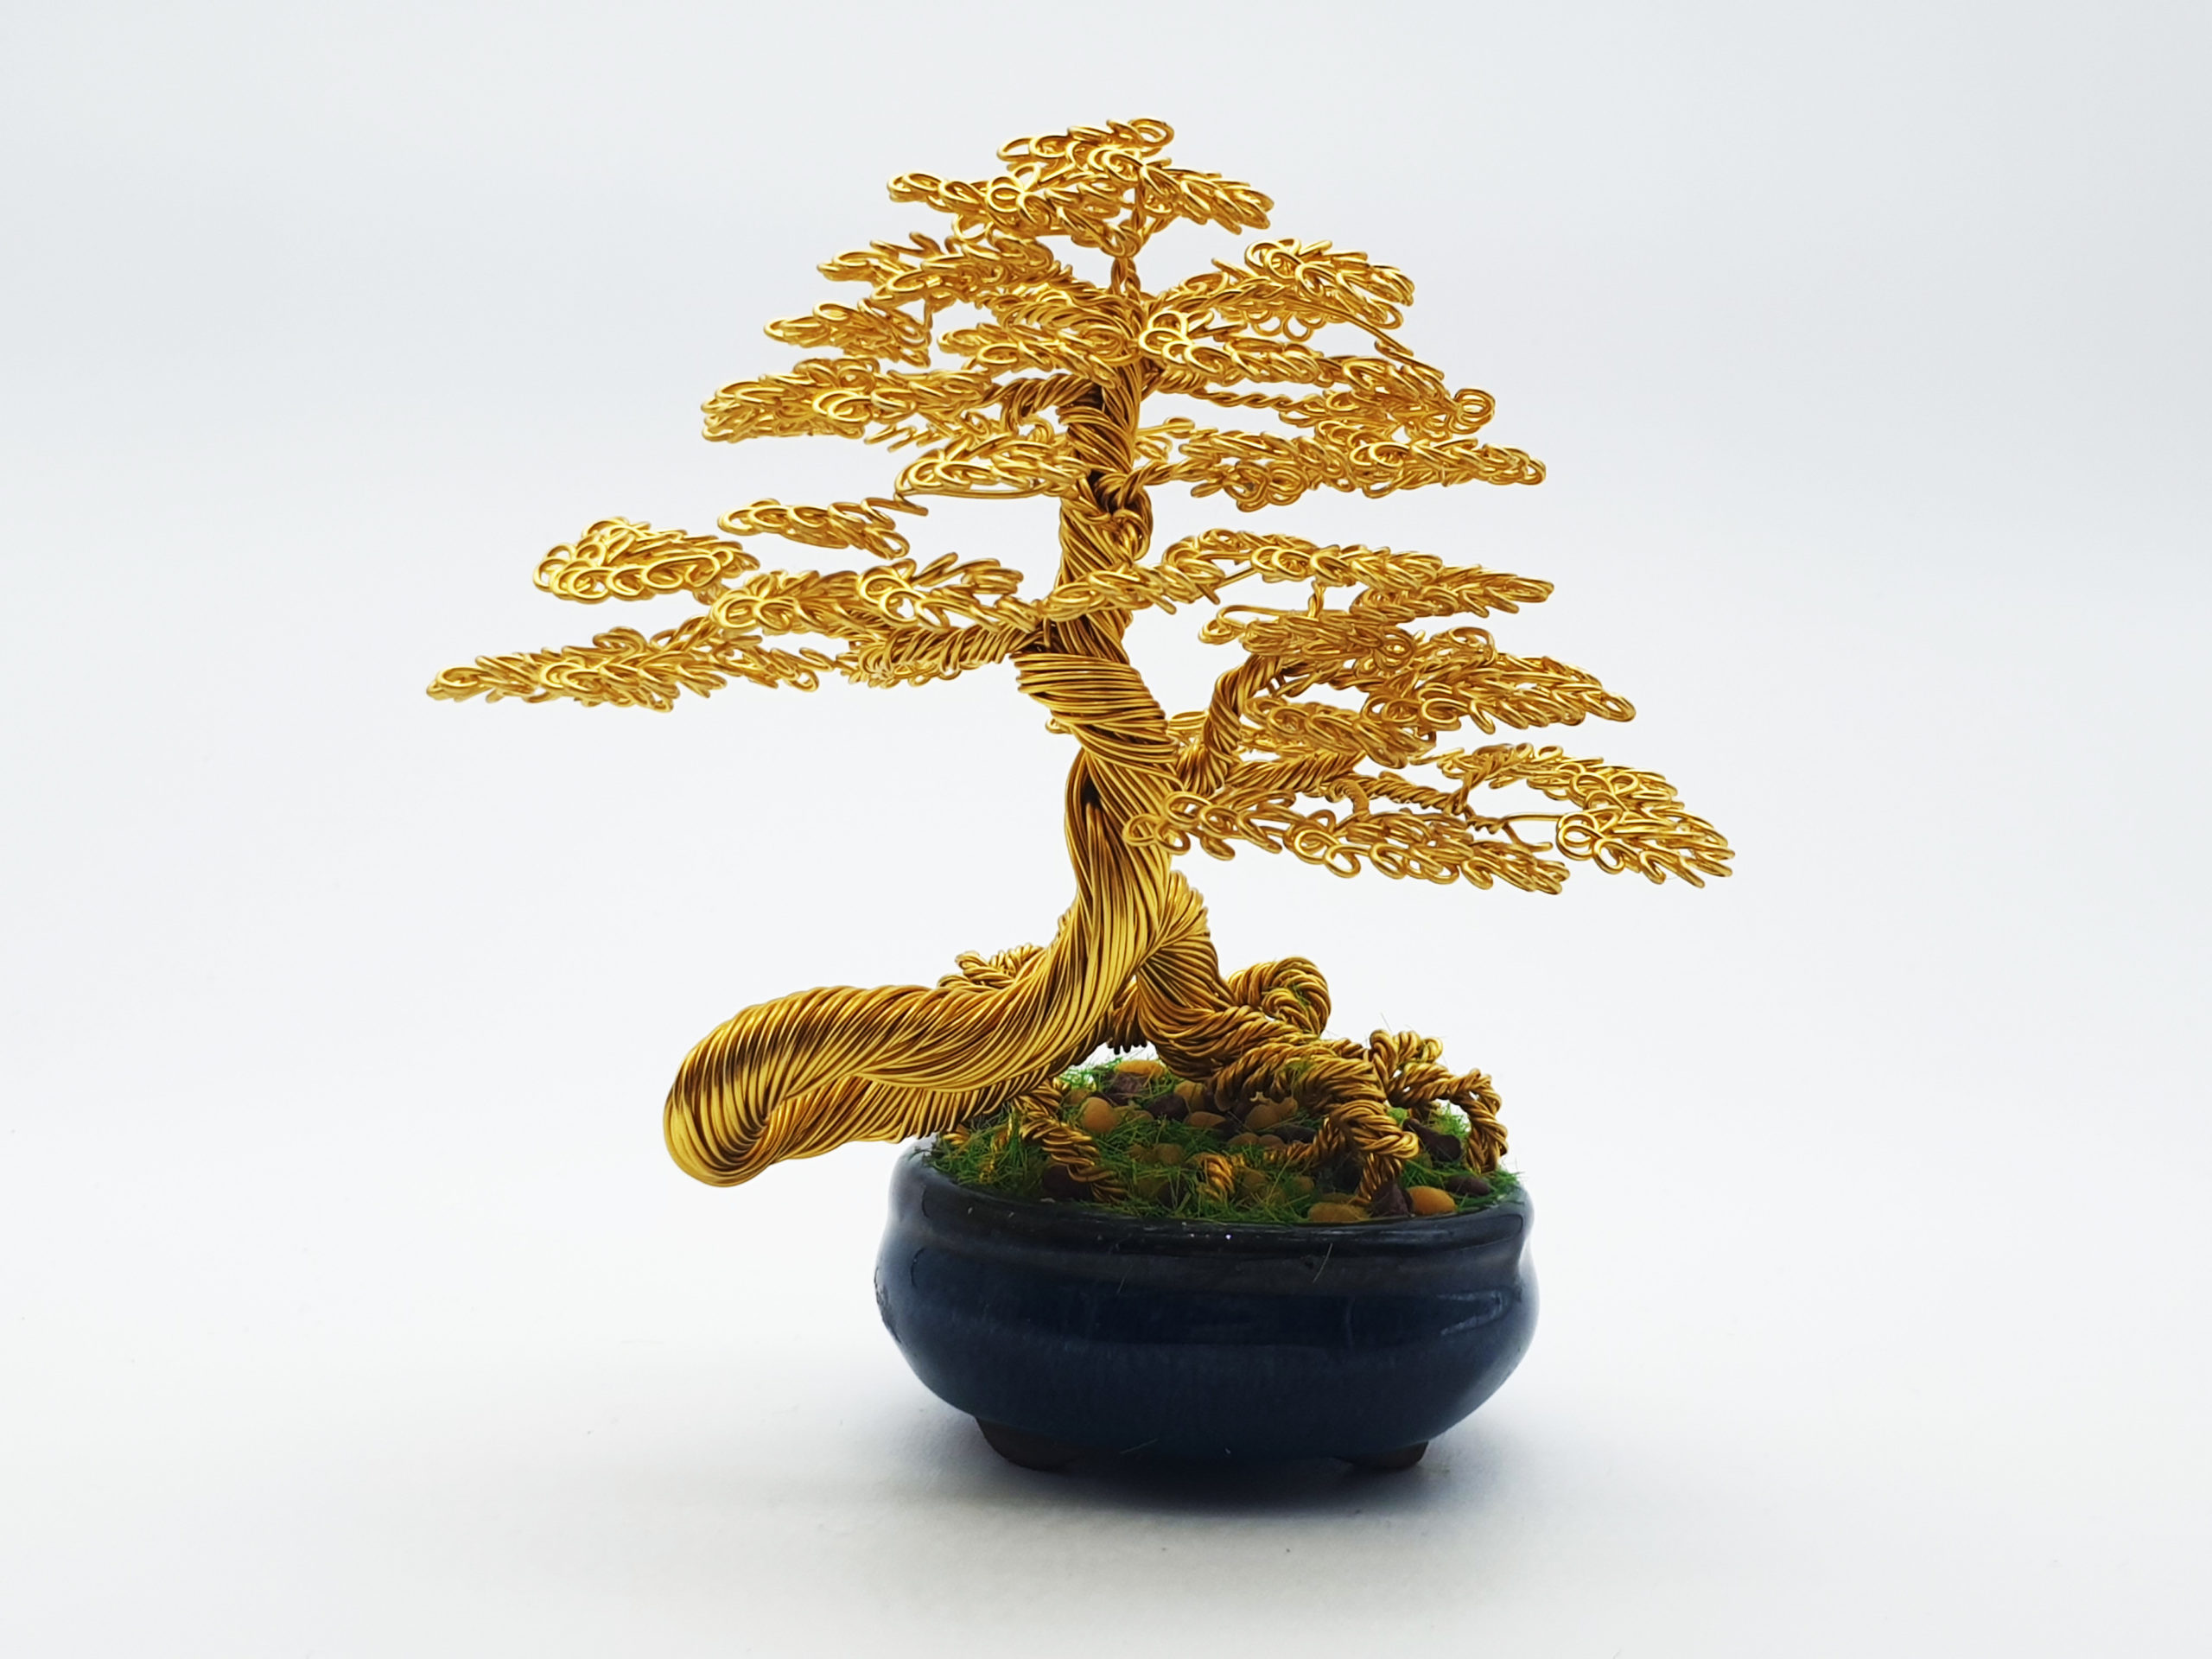 bonsai de alambre - Bonsai Chenji